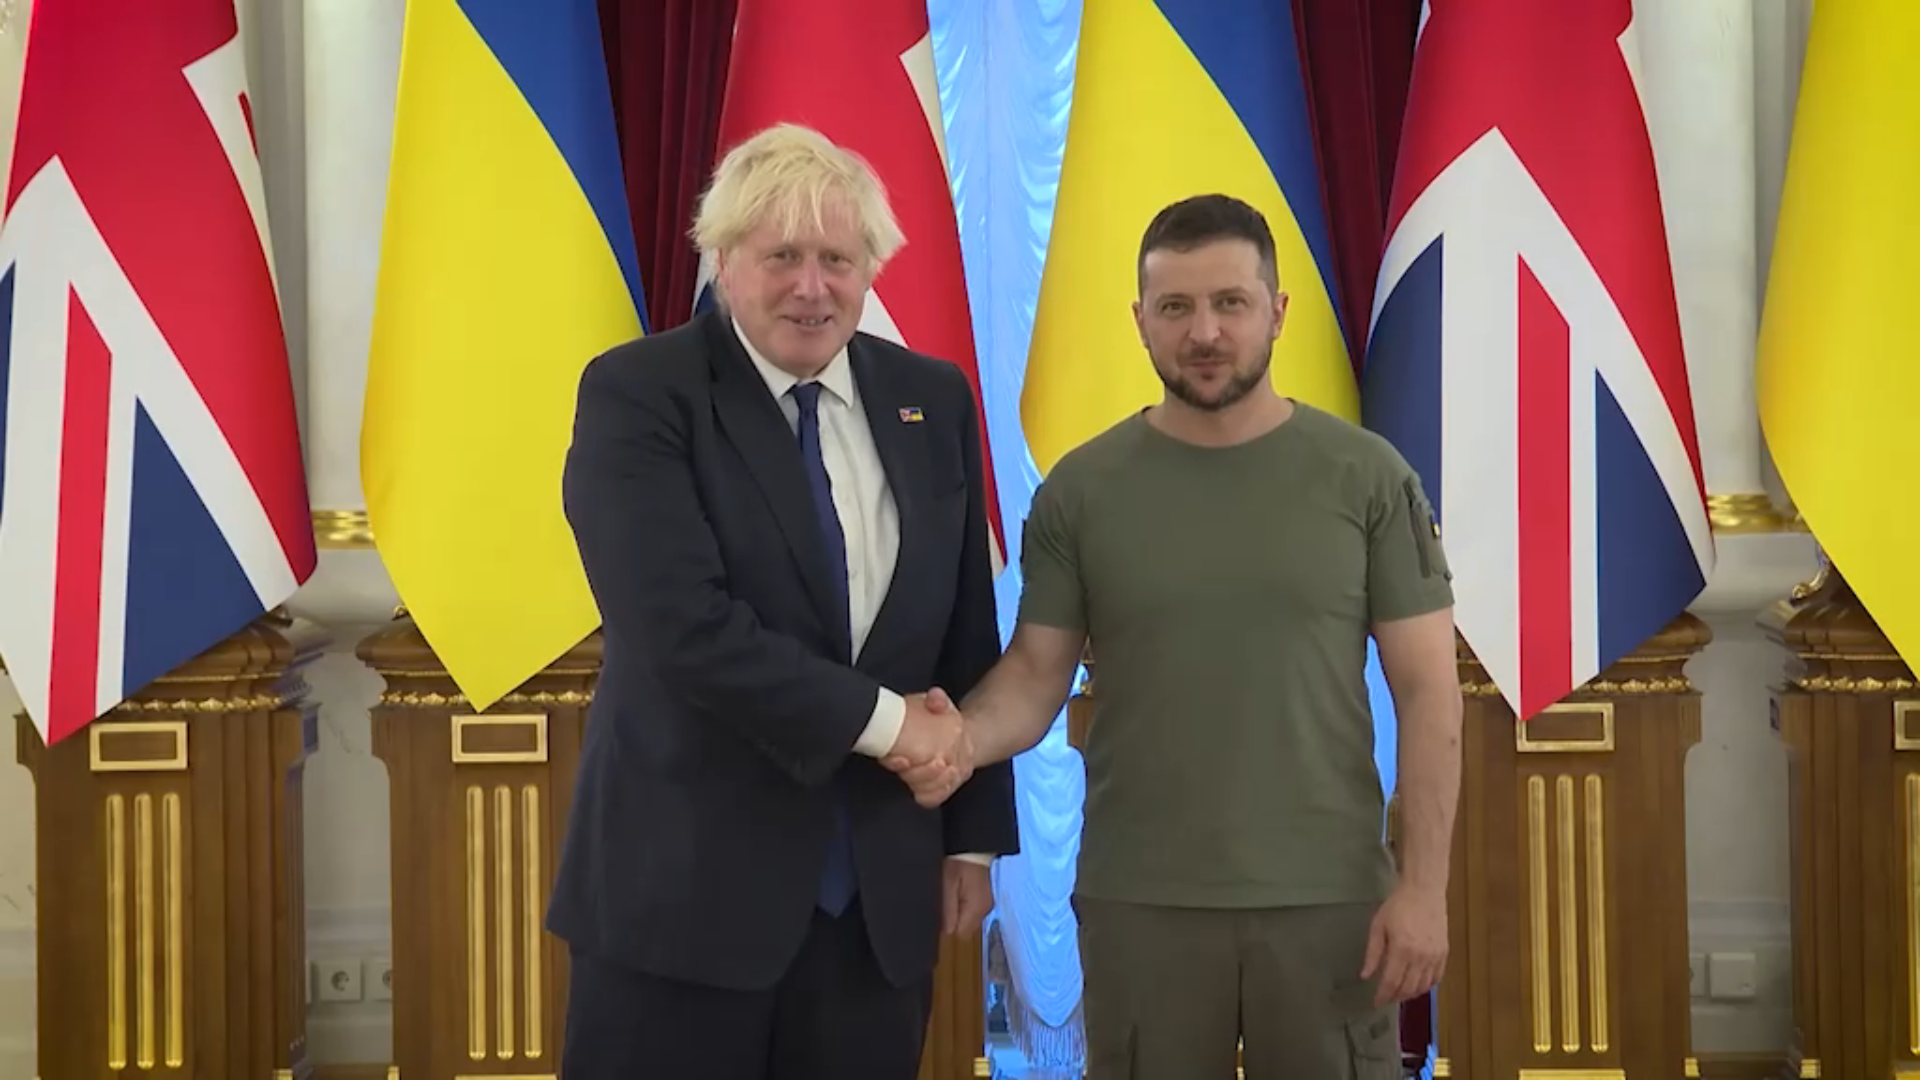 Joyeux Jour de l'Indépendance, tout le monde : Boris Johnson annonce une aide militaire de 54 millions de livres sterling pour l'Ukraine - 850 microdrones Black Hornet Nano, drones kamikazes et munitions antichars.